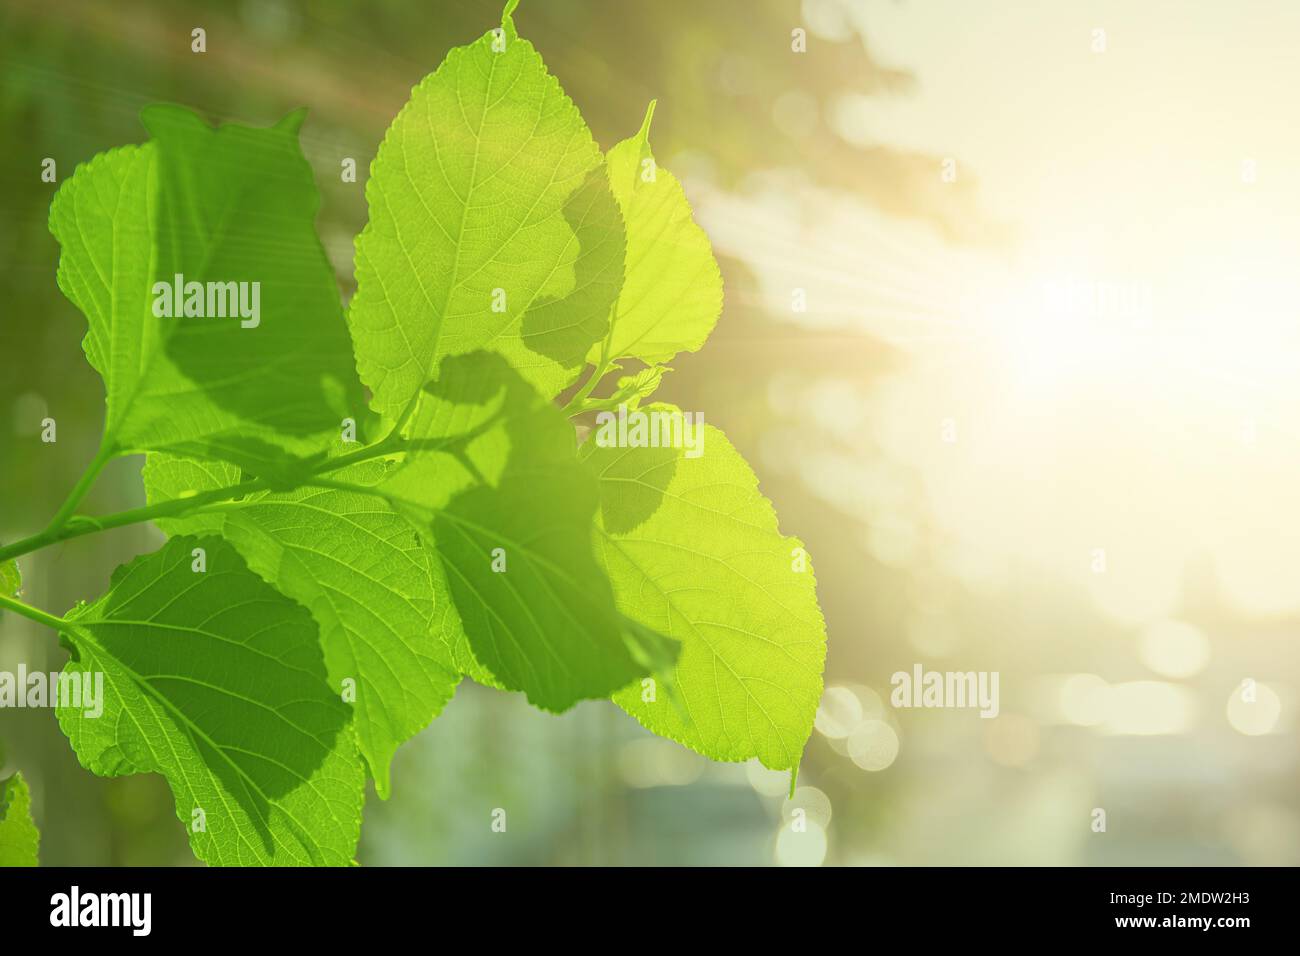 Grüne Blätter Baumpflanzenblätter gegen Sonnenlicht für Sauerstoff-Kohlendioxid, das im Photosyntheseprozess absorbiert wird Stockfoto